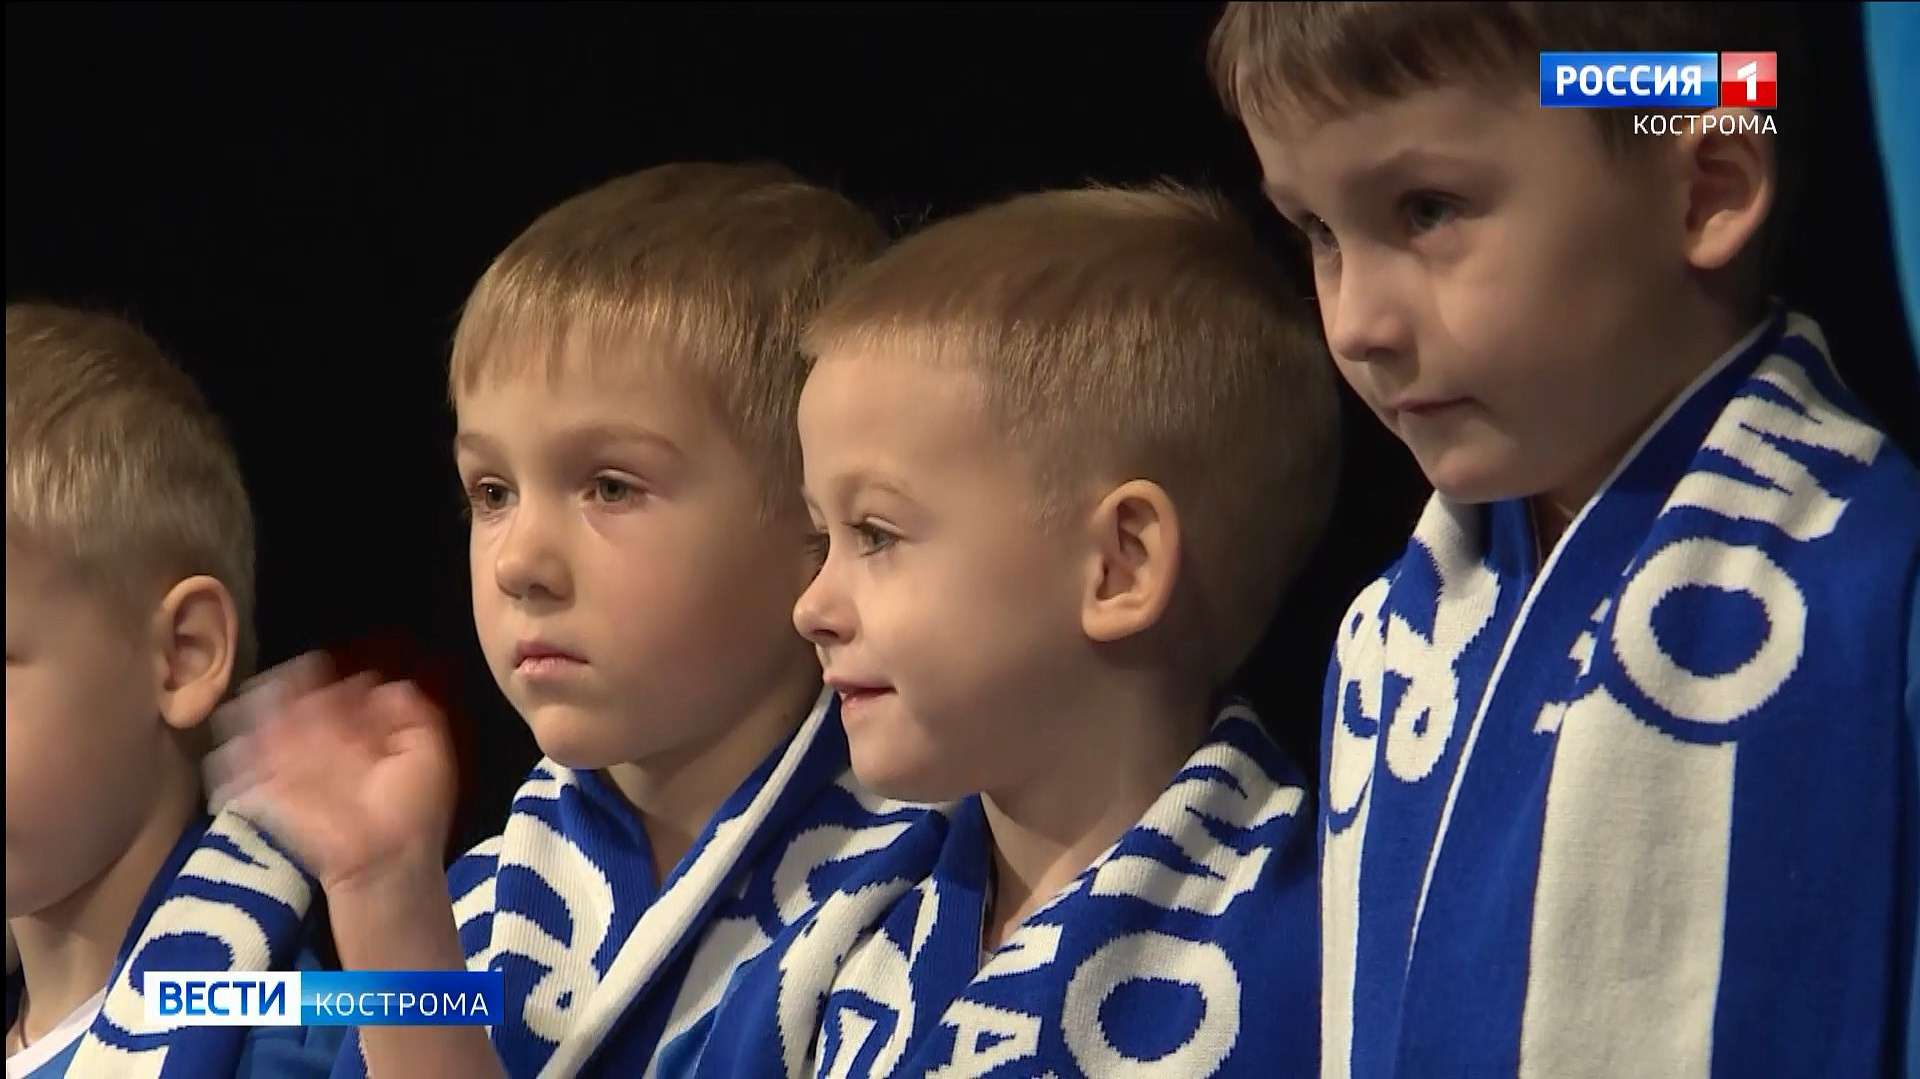 Юных костромских футболистов посвятили в бело-голубые цвета